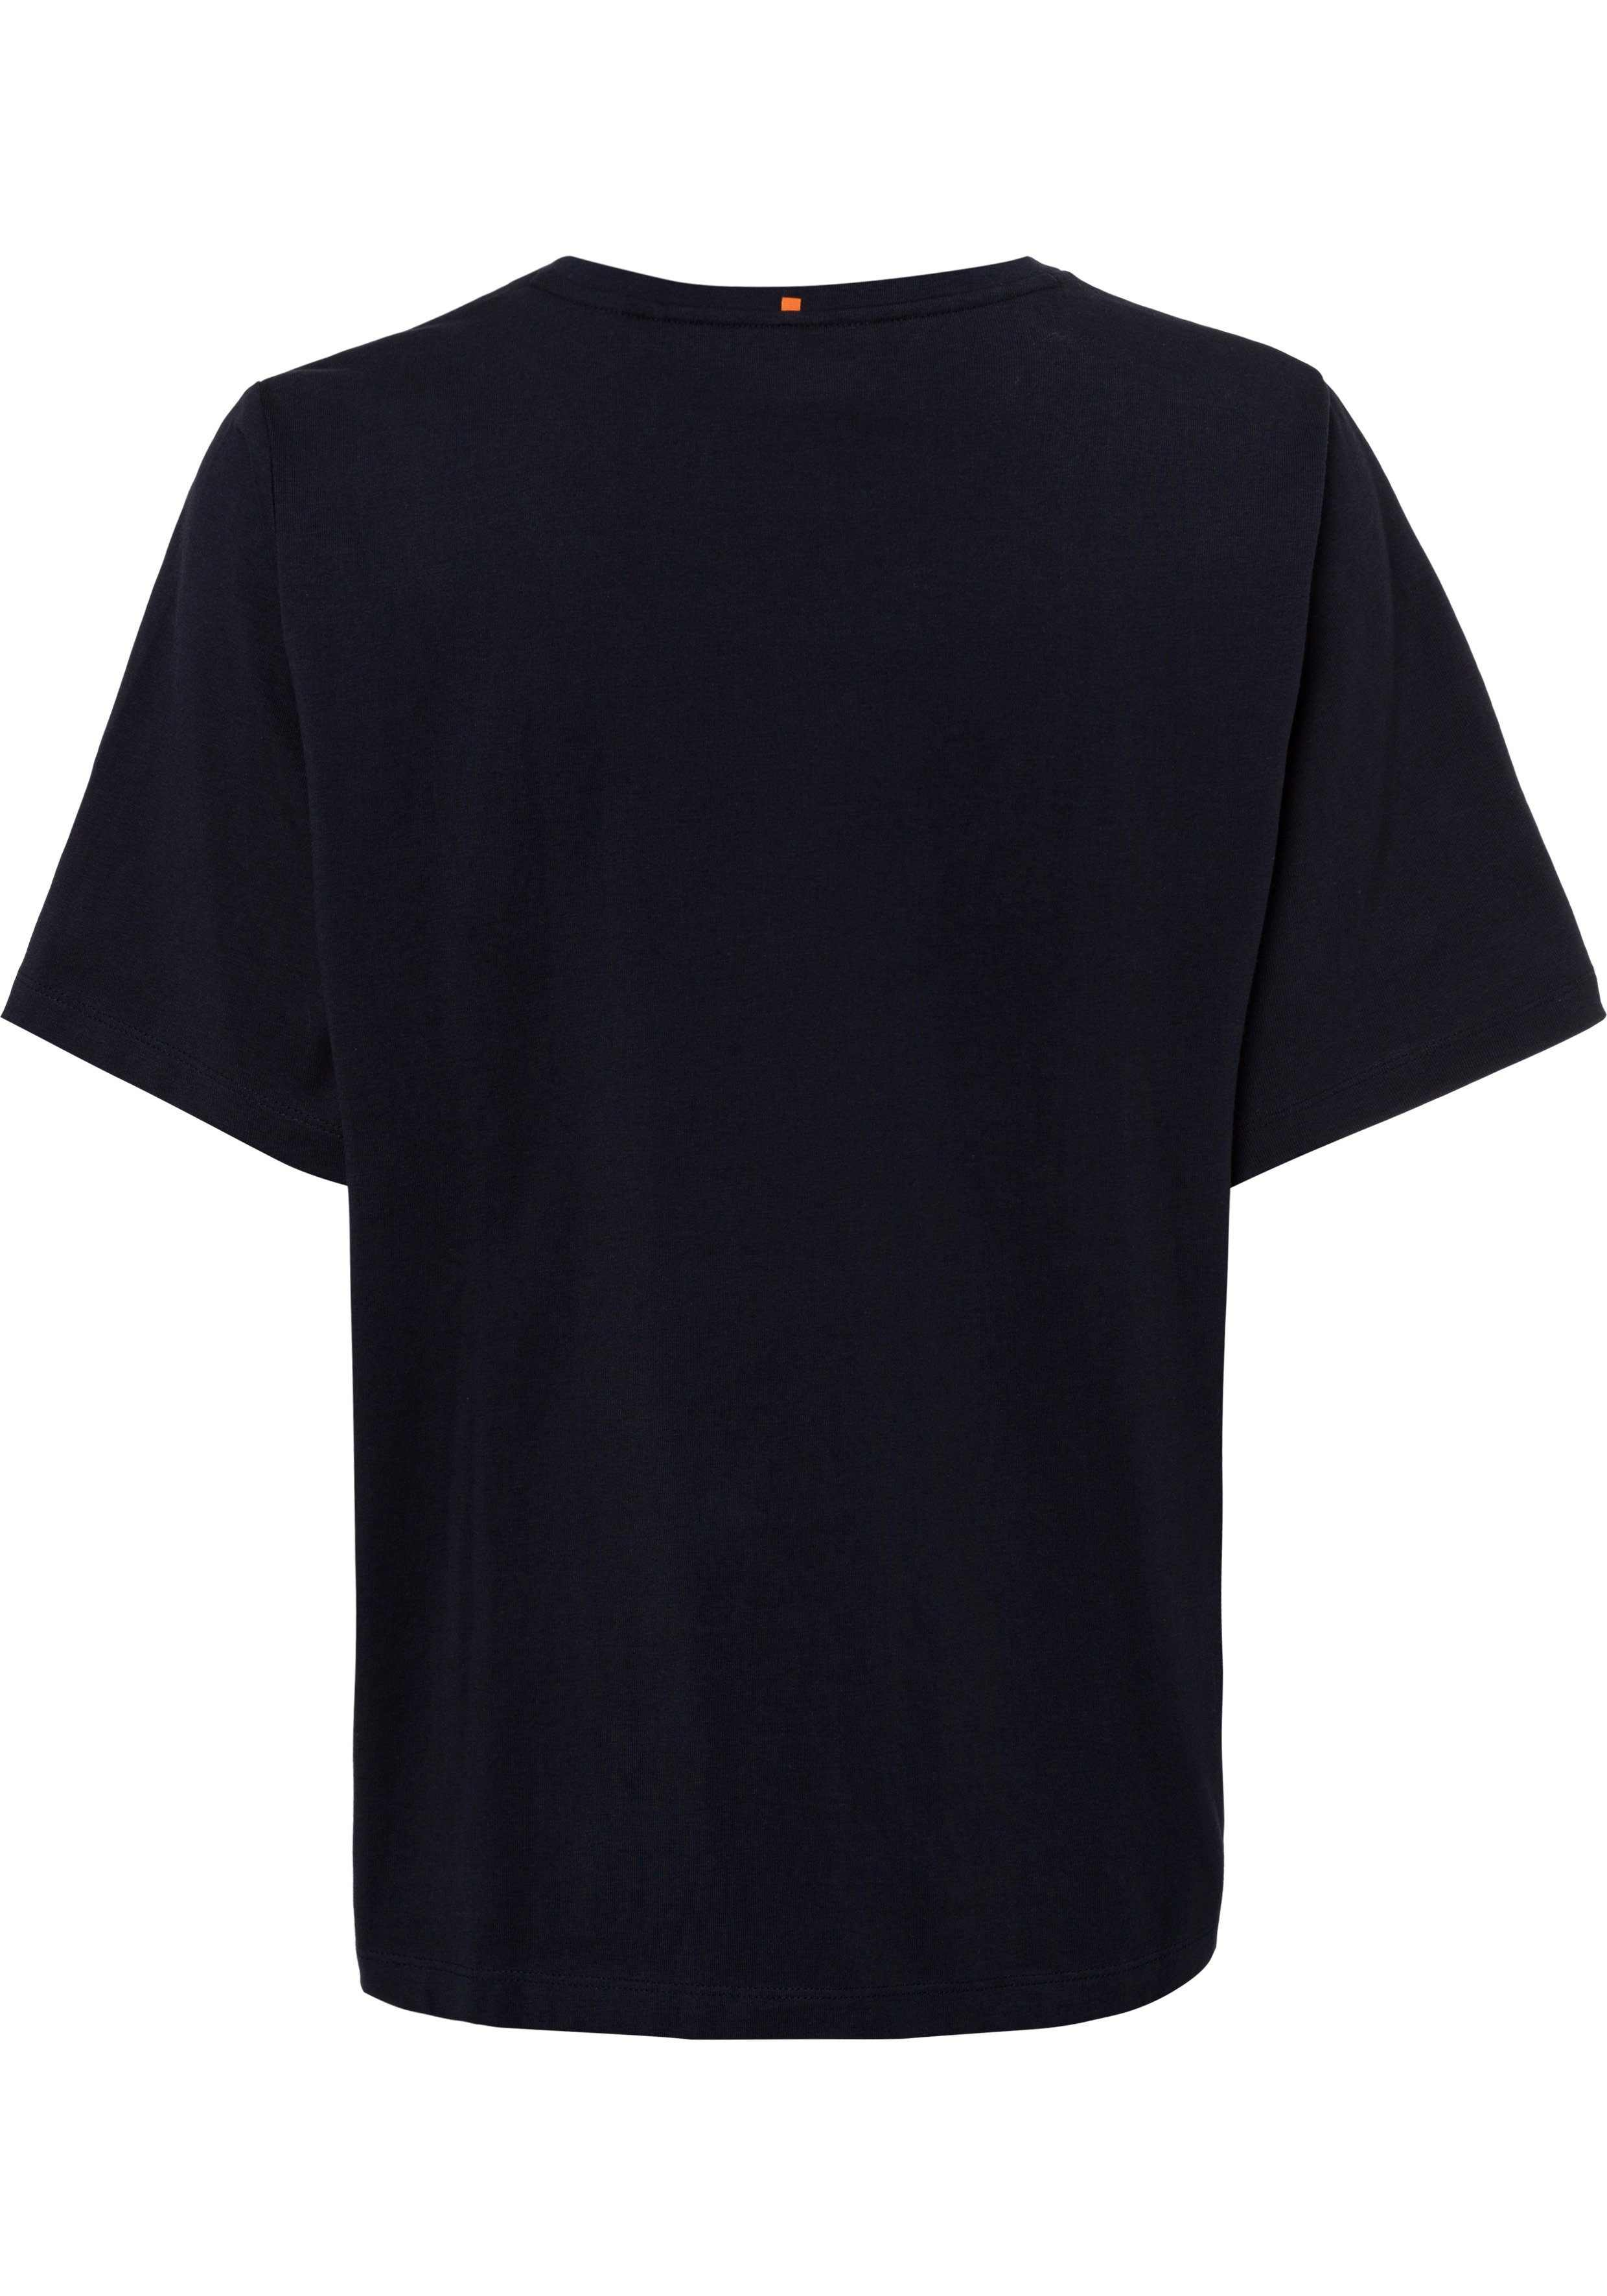 BOSS-Kontrastband am Ausschnitt navy ORANGE mit T-Shirt BOSS innen